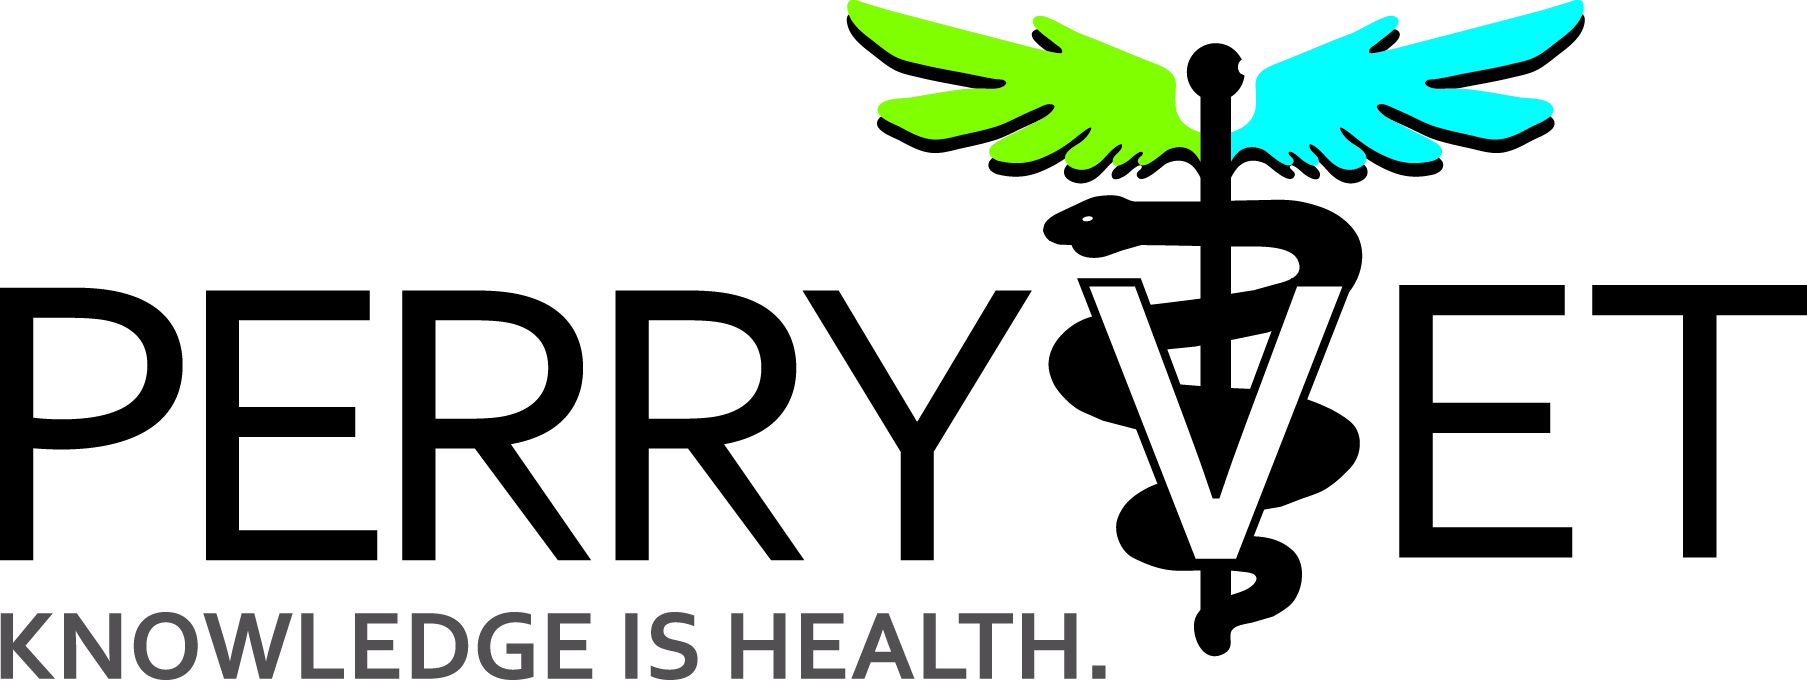 Perry Vet Clinic main logo